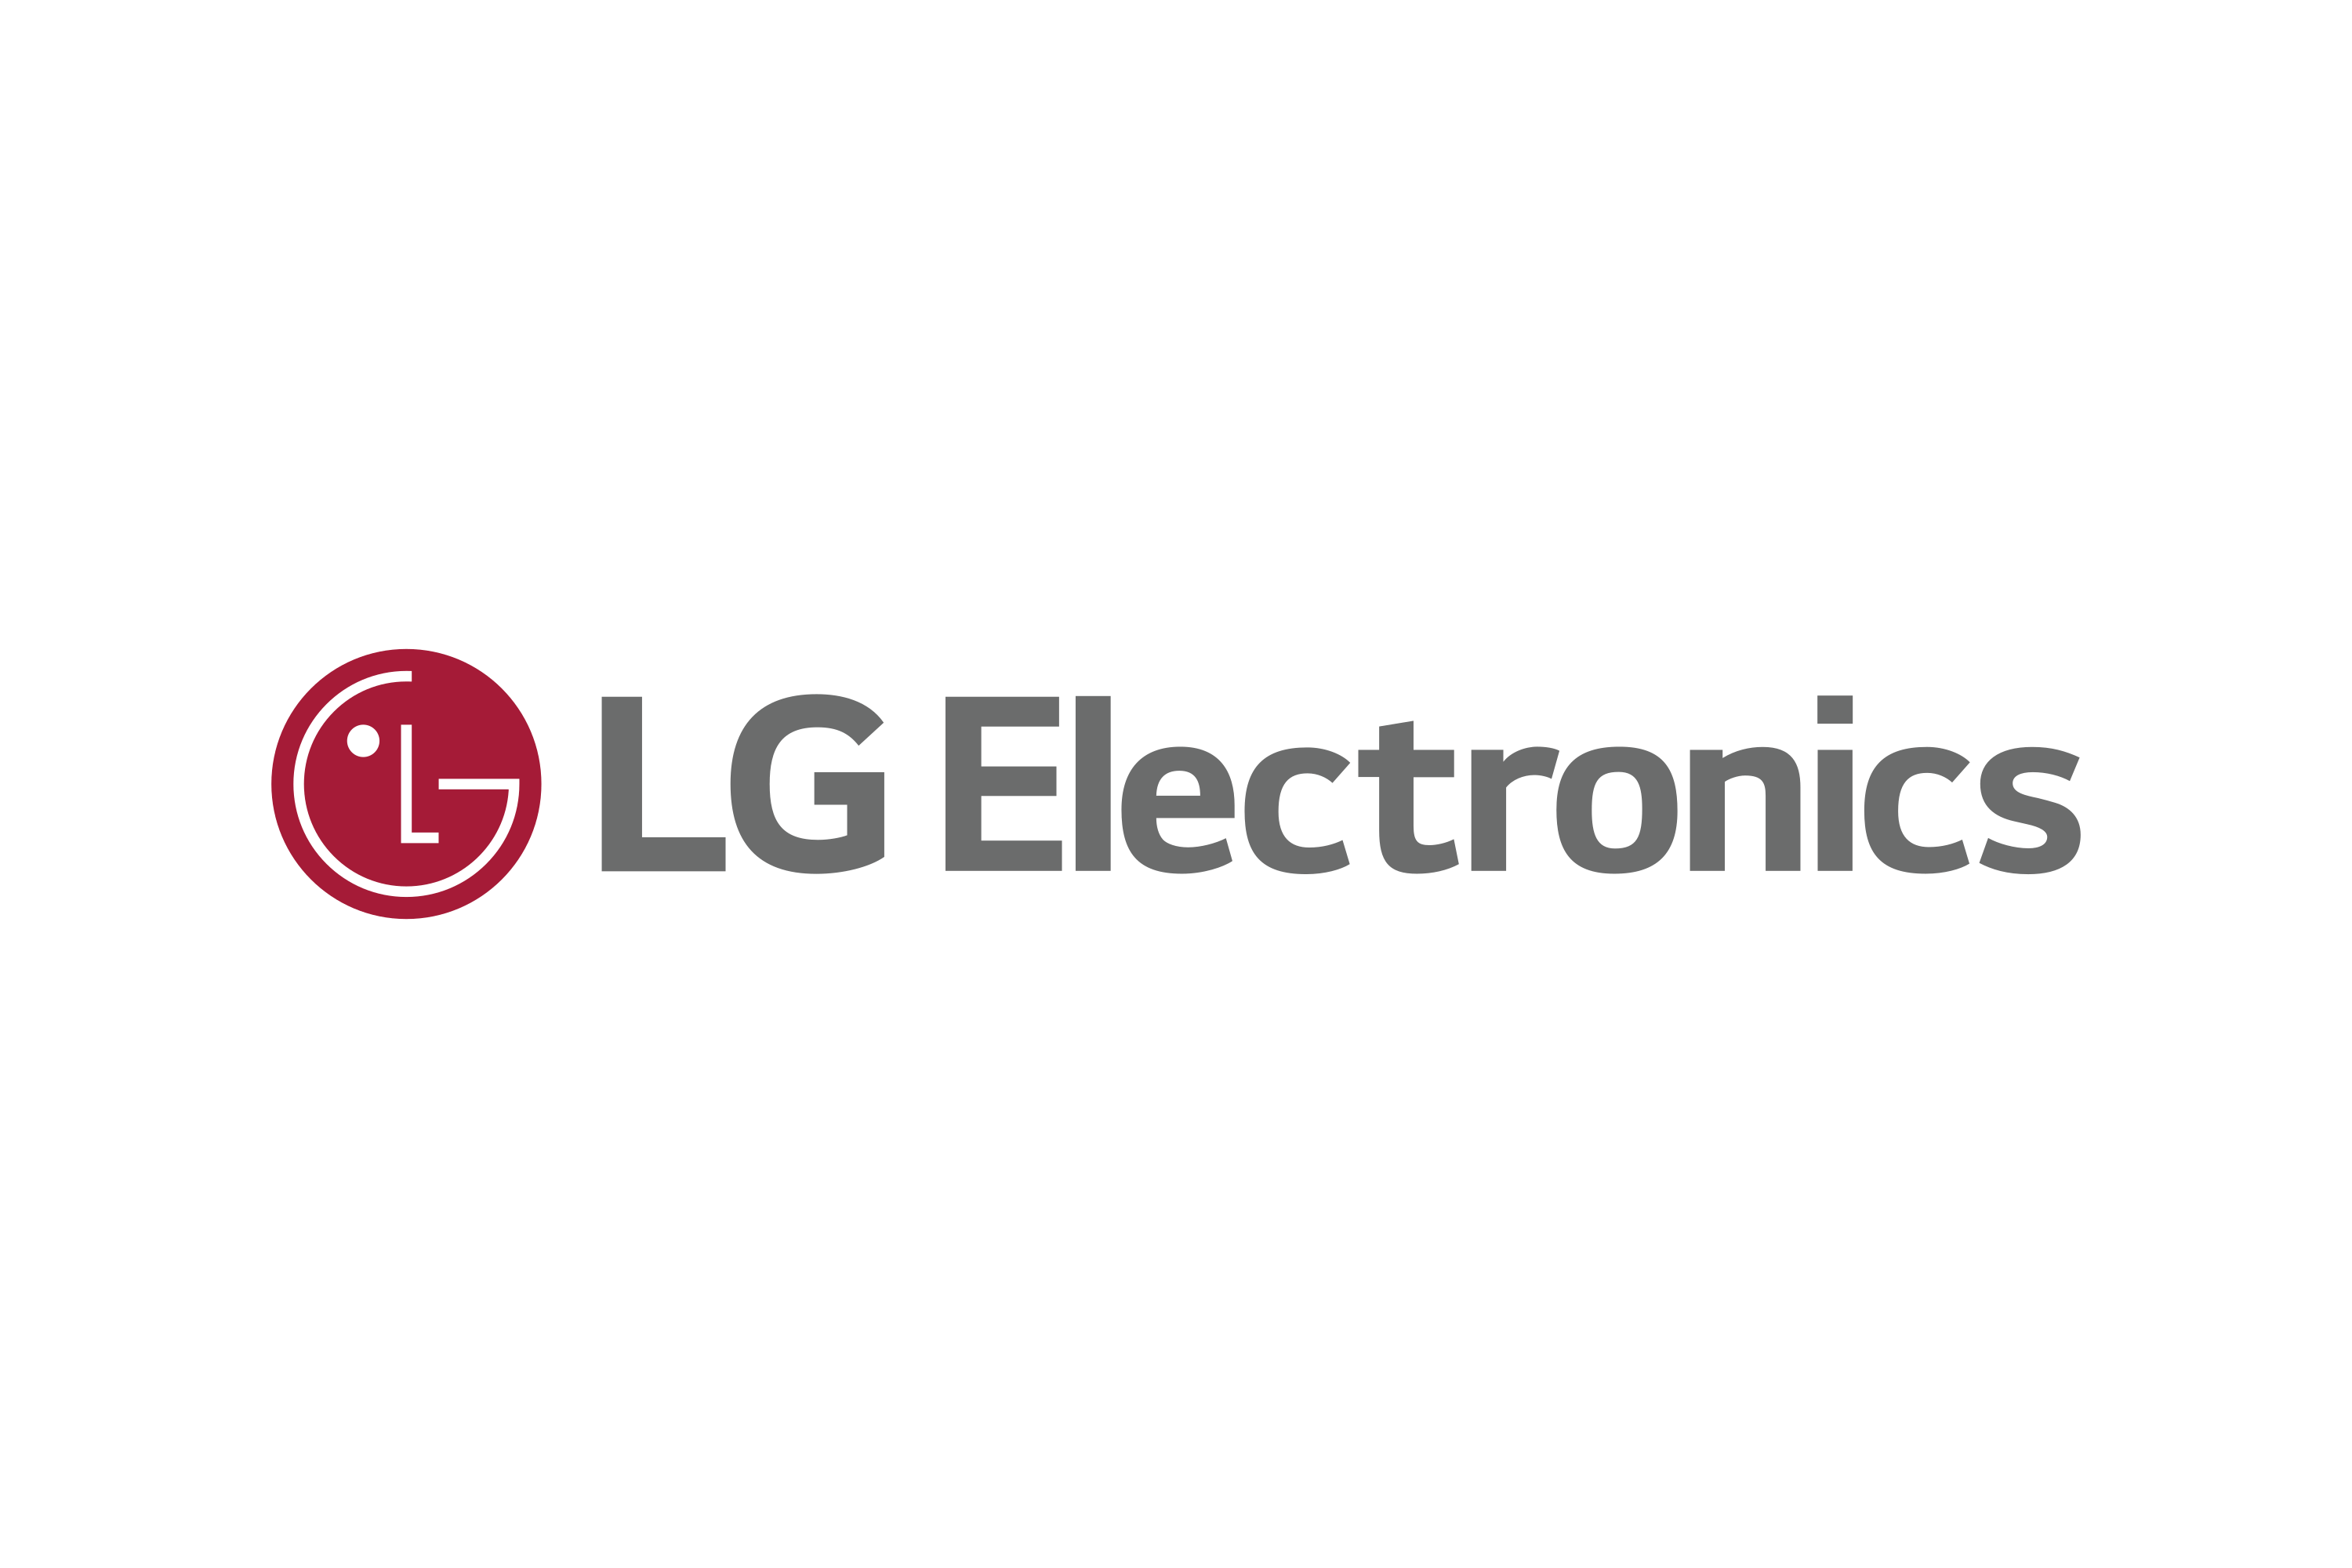 LG Logo Transparent Images